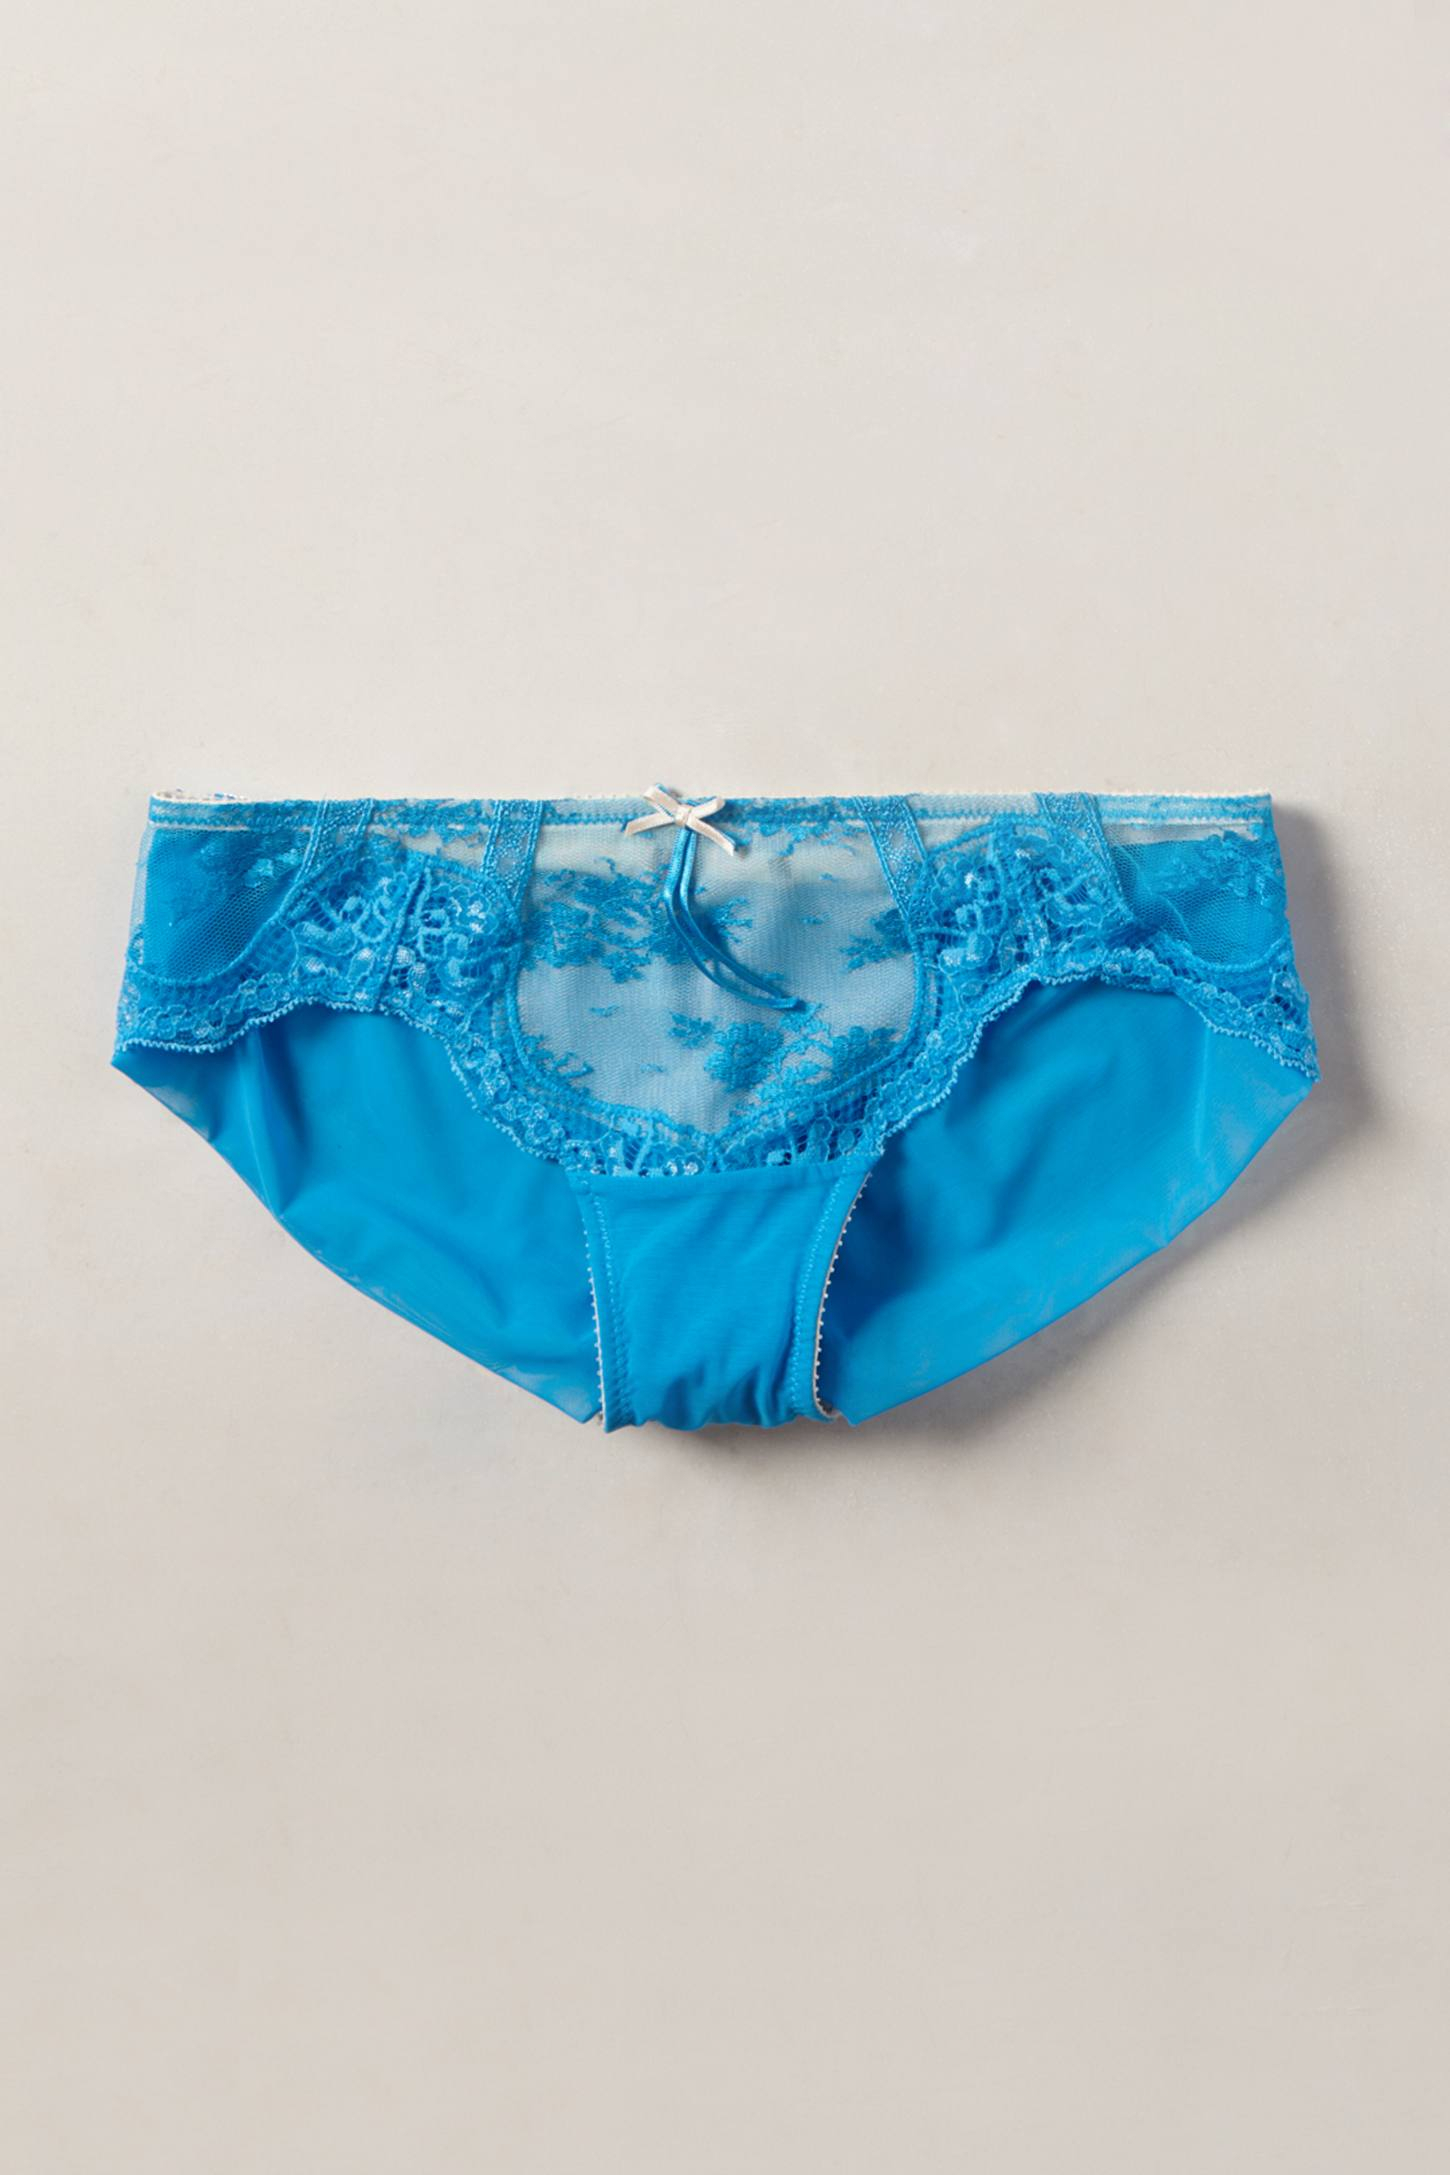 Lyst - Elle Macpherson Niobe Bikini in Blue